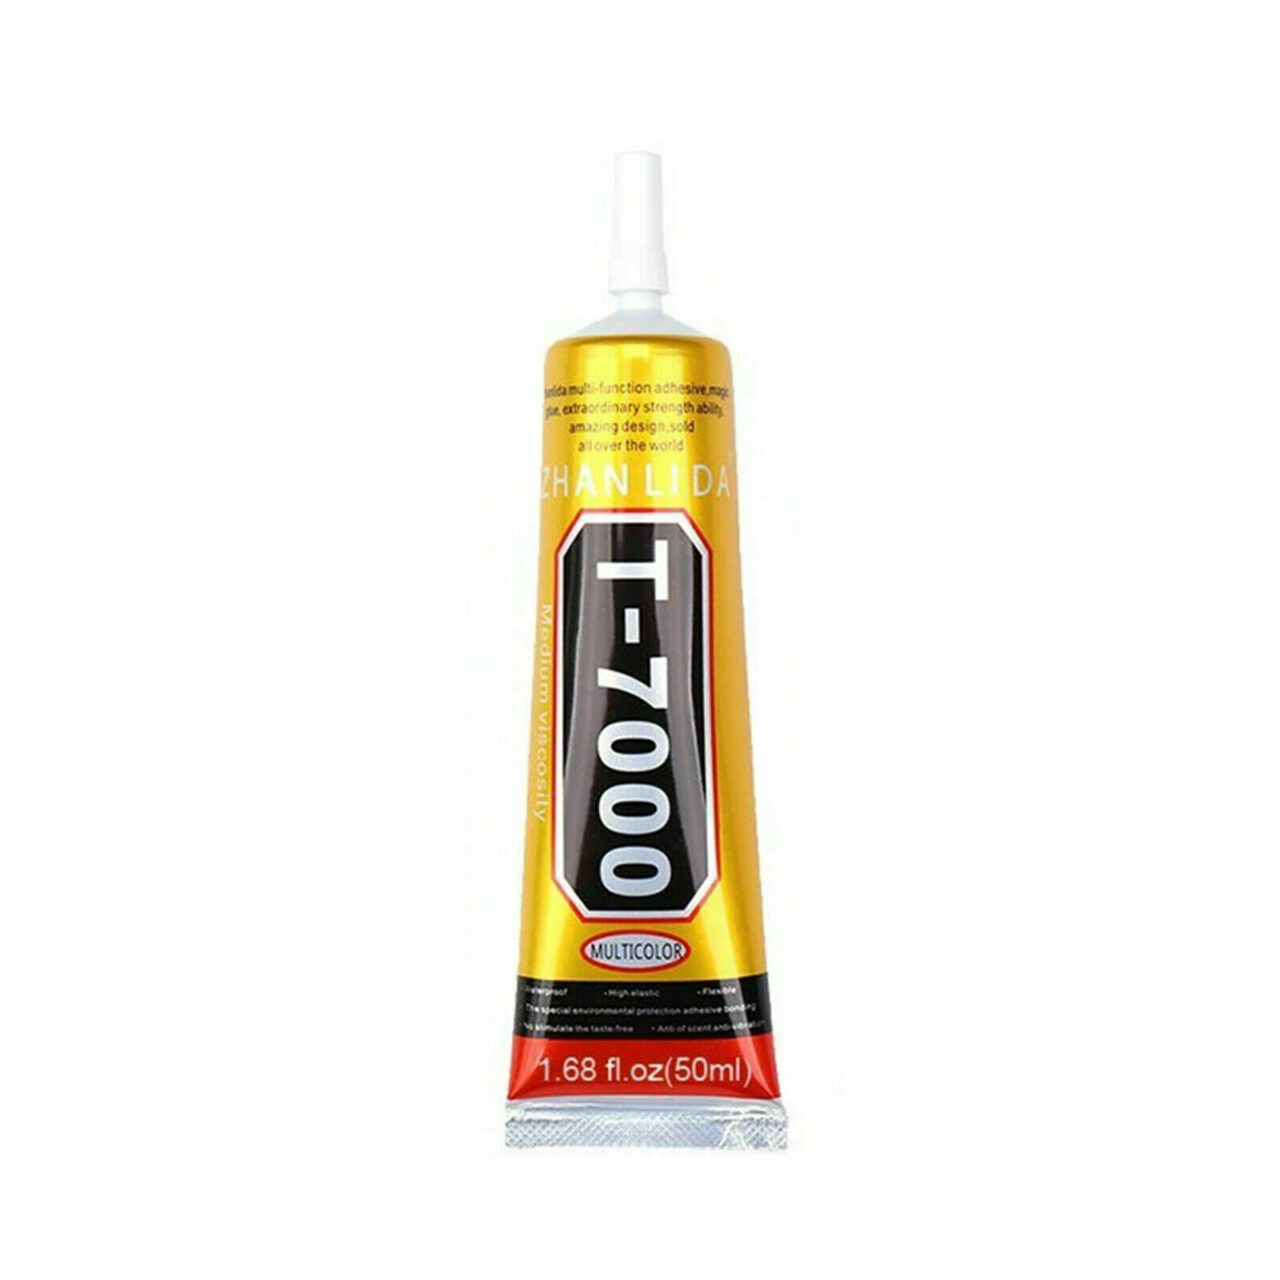 T7000 glue